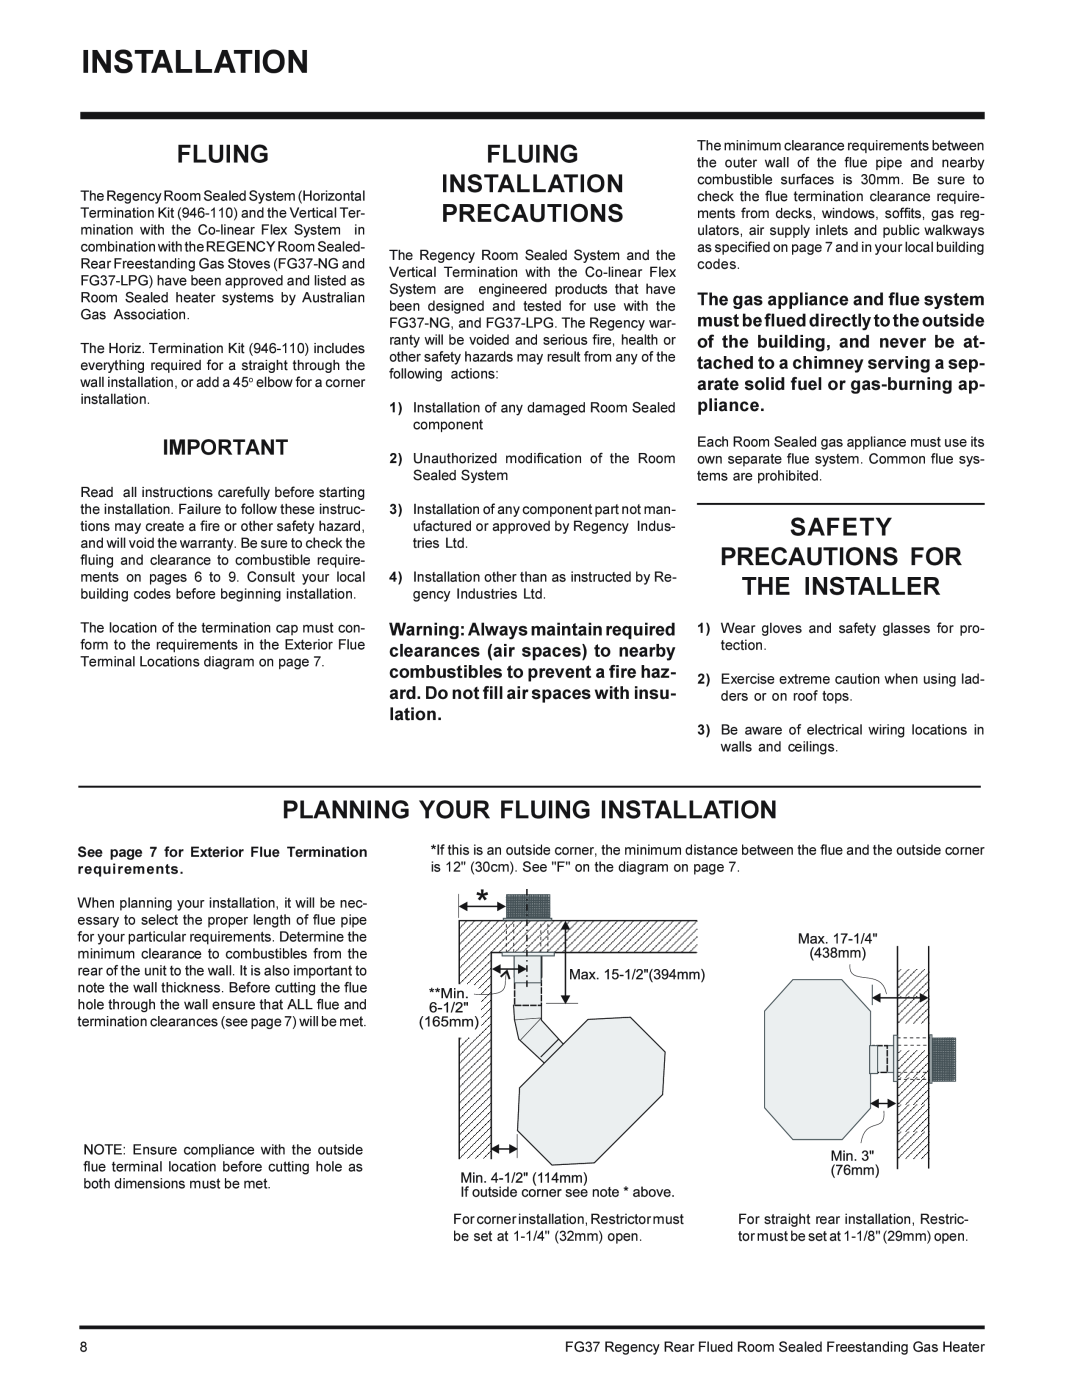 Regency FG37-LPG, FG37-NG installation manual Fluing Installation Precautions, Safety Precautions For The Installer 